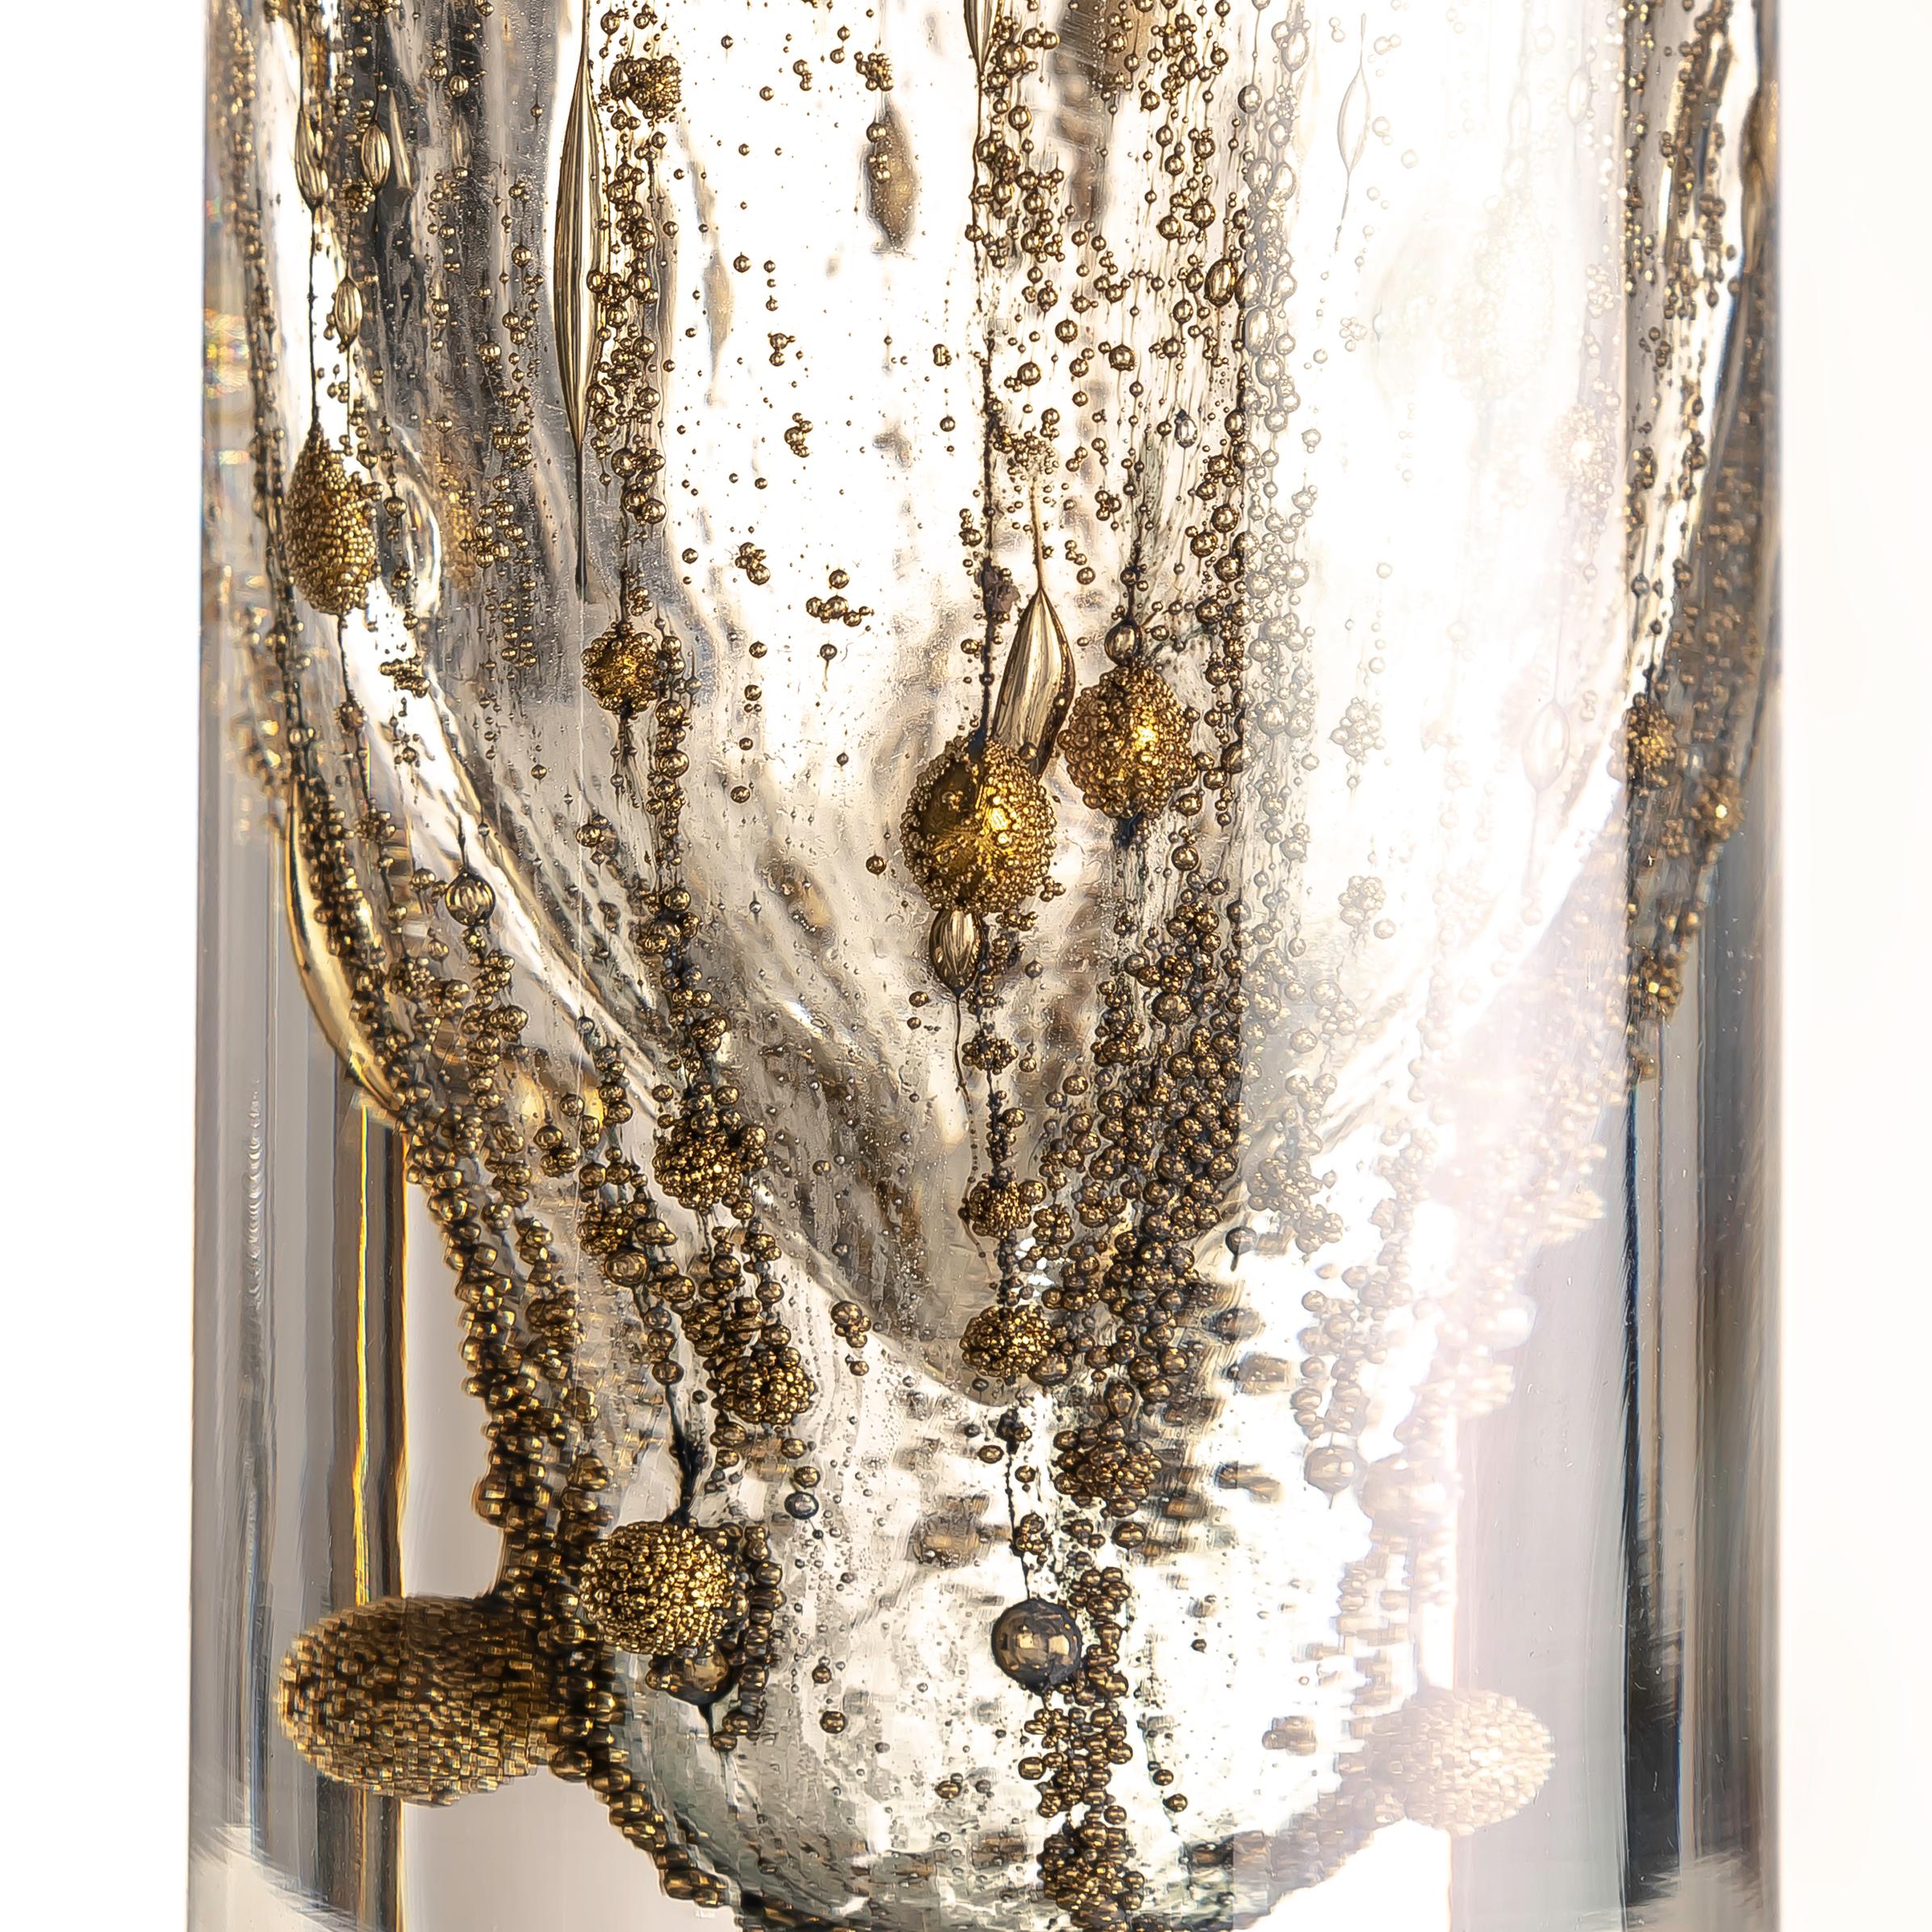 Adquirir el Jarrón de vidrio artístico Peill & Putzler de Alemania de los años 60, adornado con burbujas doradas en su interior, ofrece la oportunidad de poseer una cautivadora pieza de arte de mediados de siglo que trasciende la mera funcionalidad